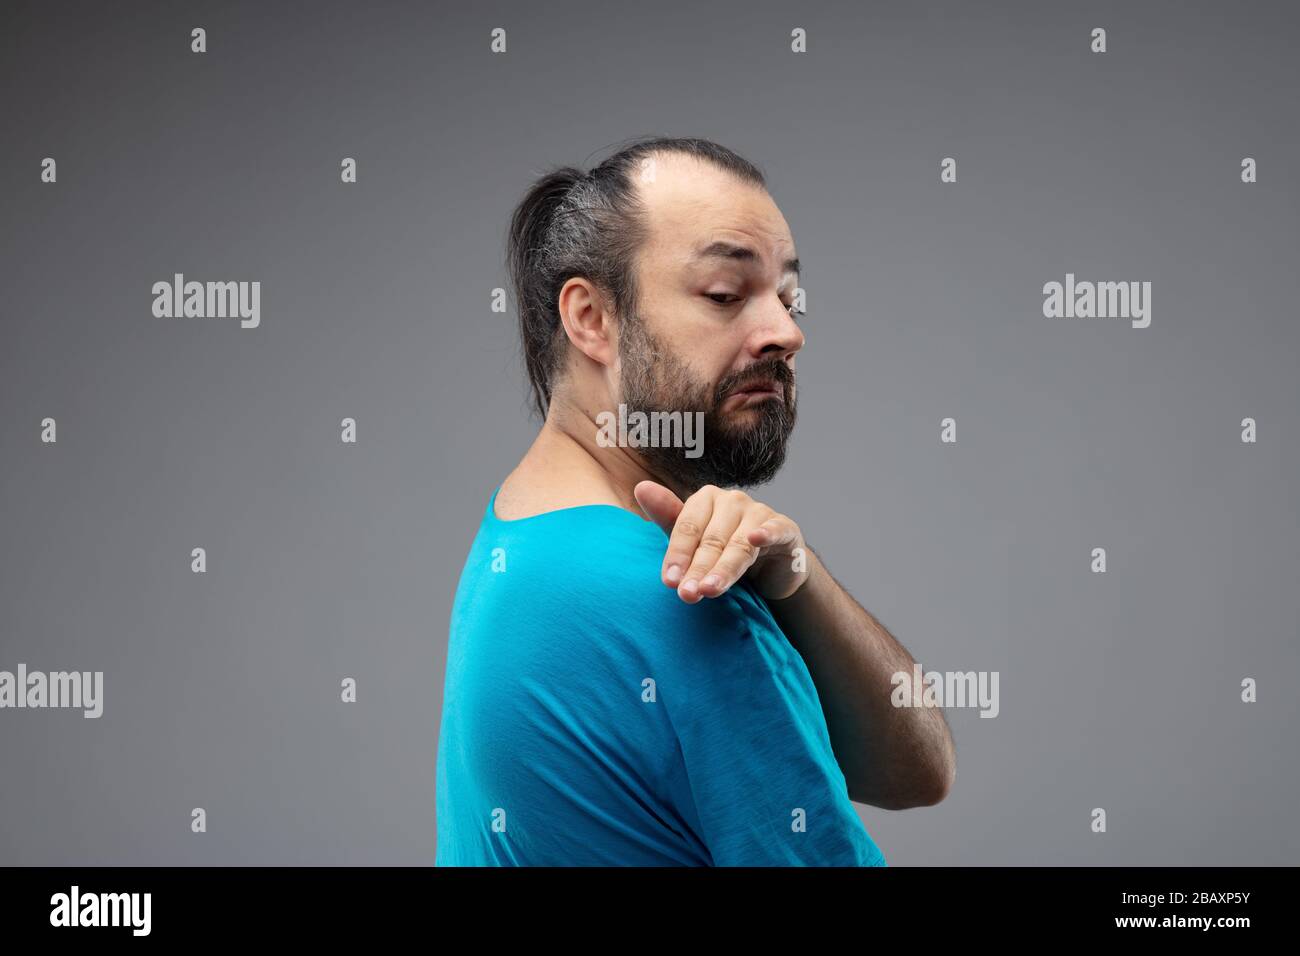 Homme barbu dans un t-shirt bleu montrant un geste méprisant avec ...